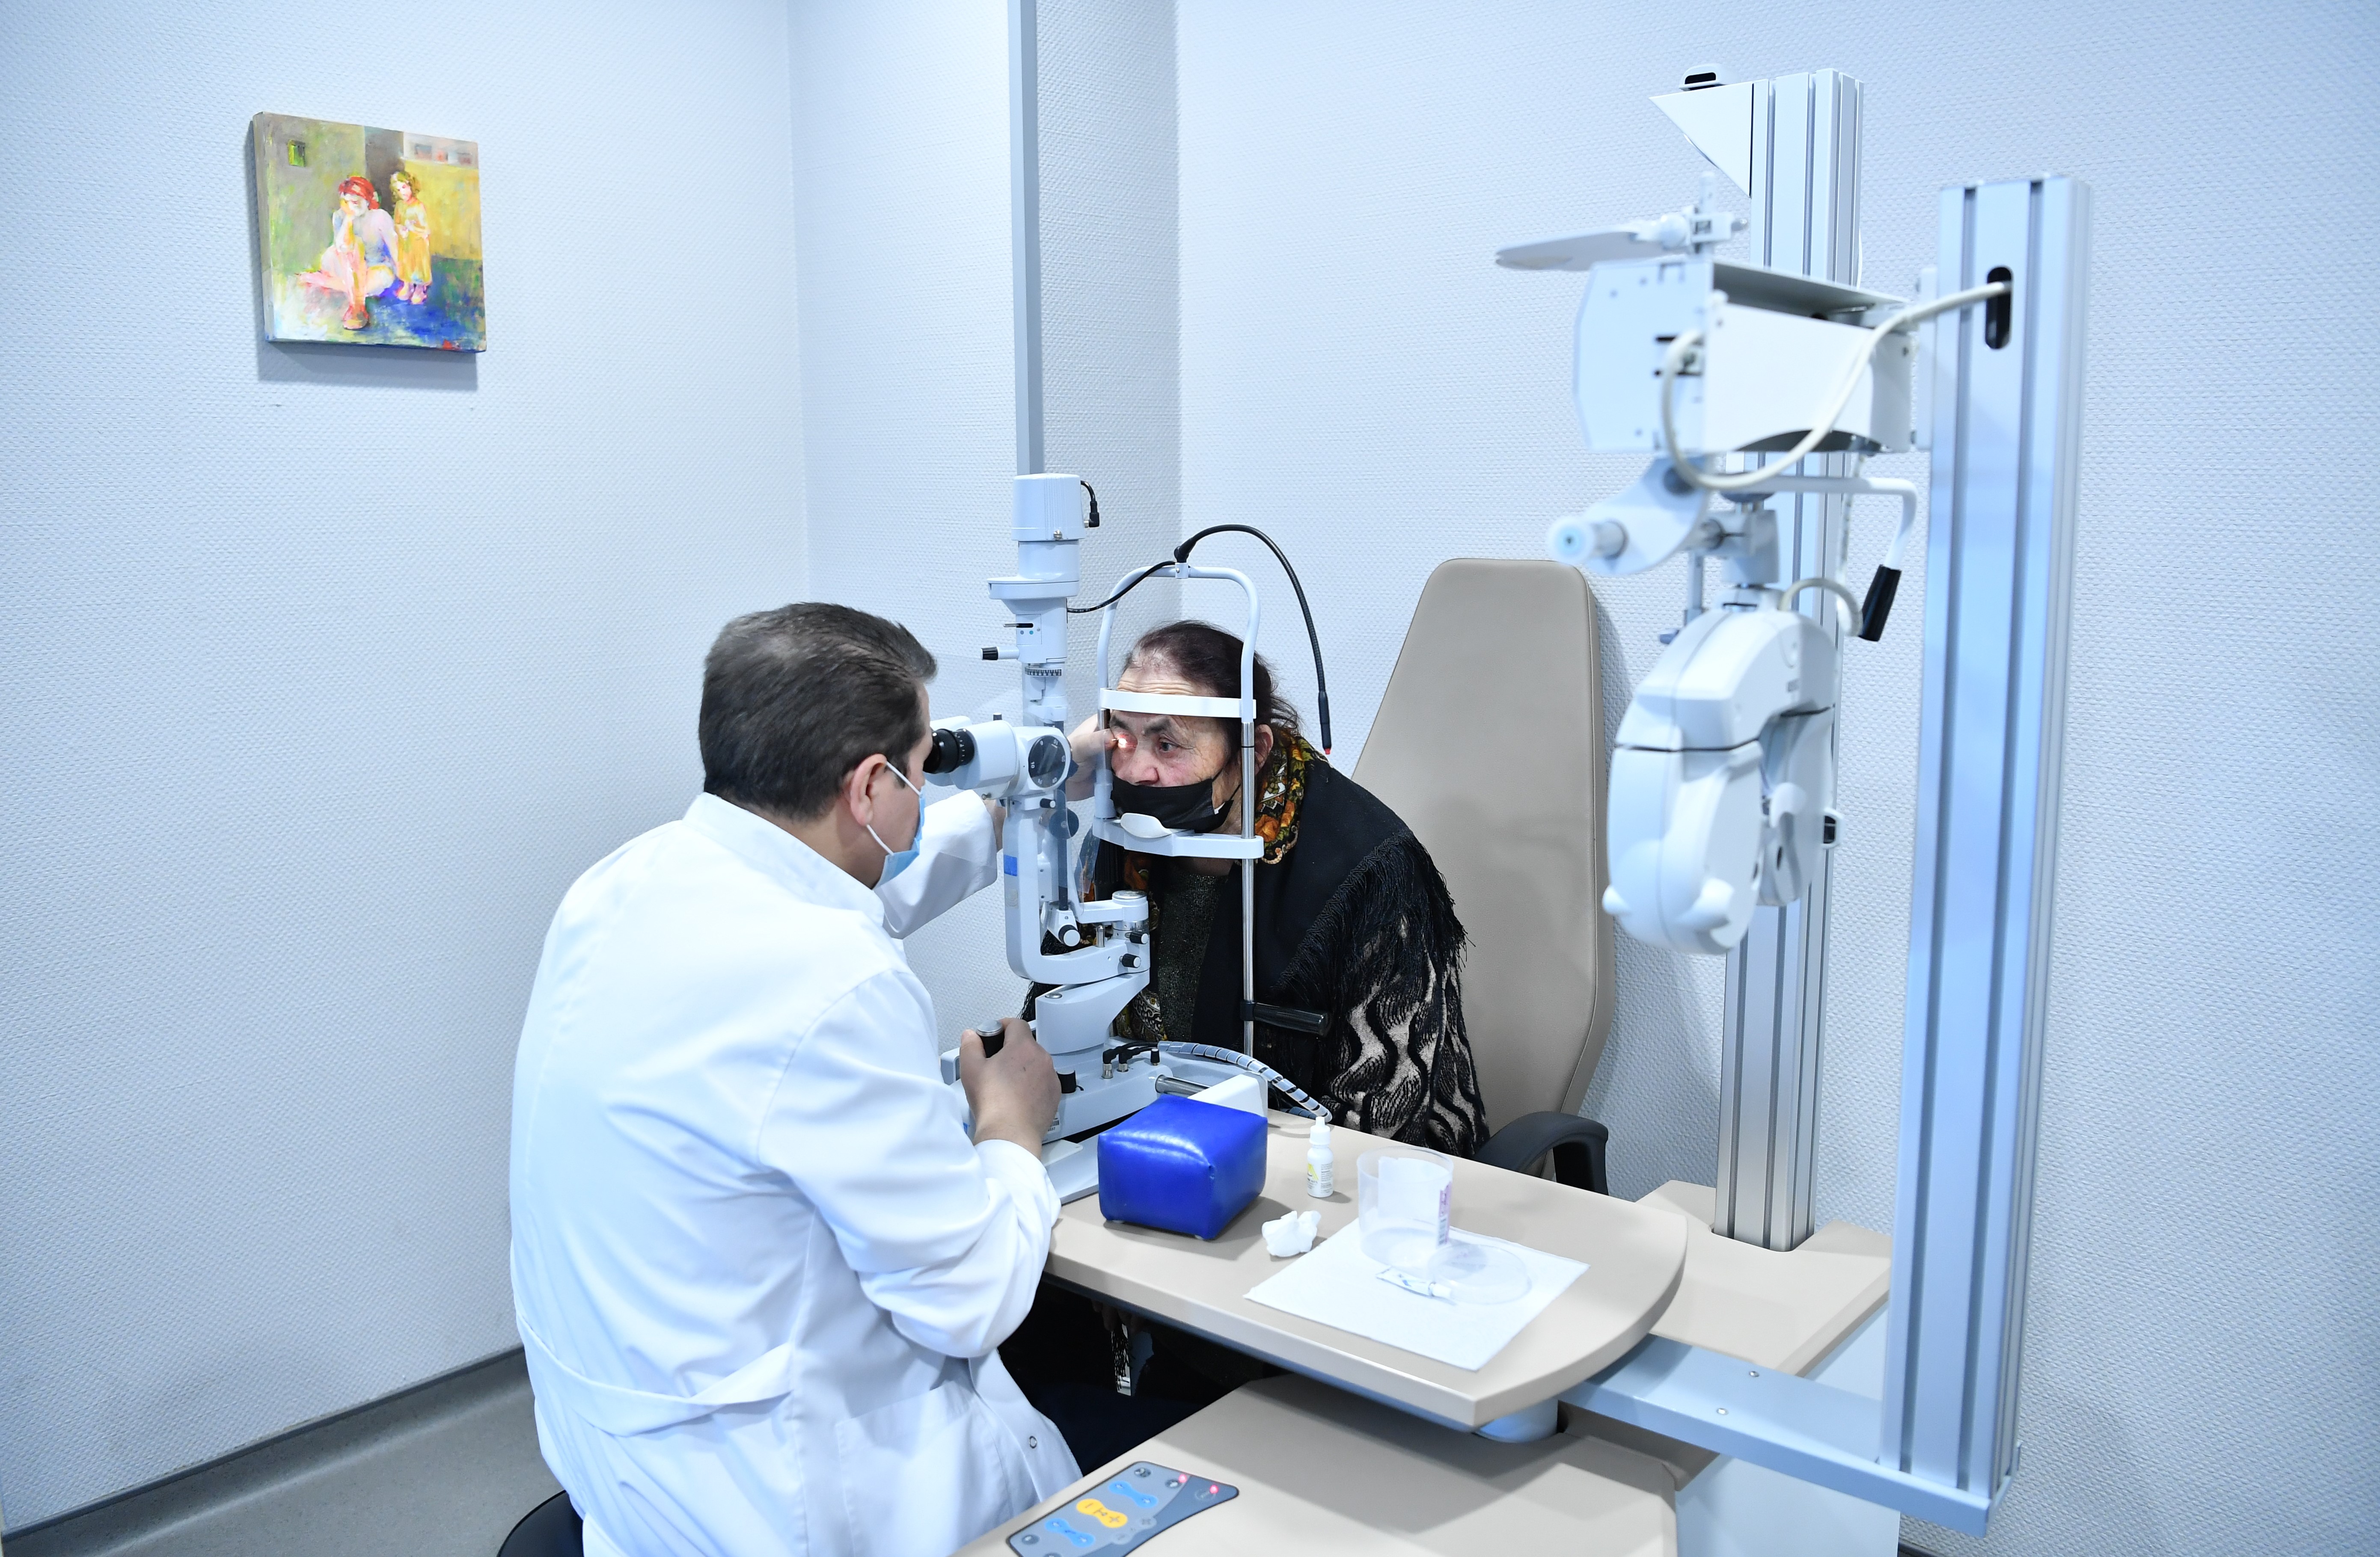 Жители Шамкирского района прошли бесплатное обследование на предмет глазных болезней и операции на глазах